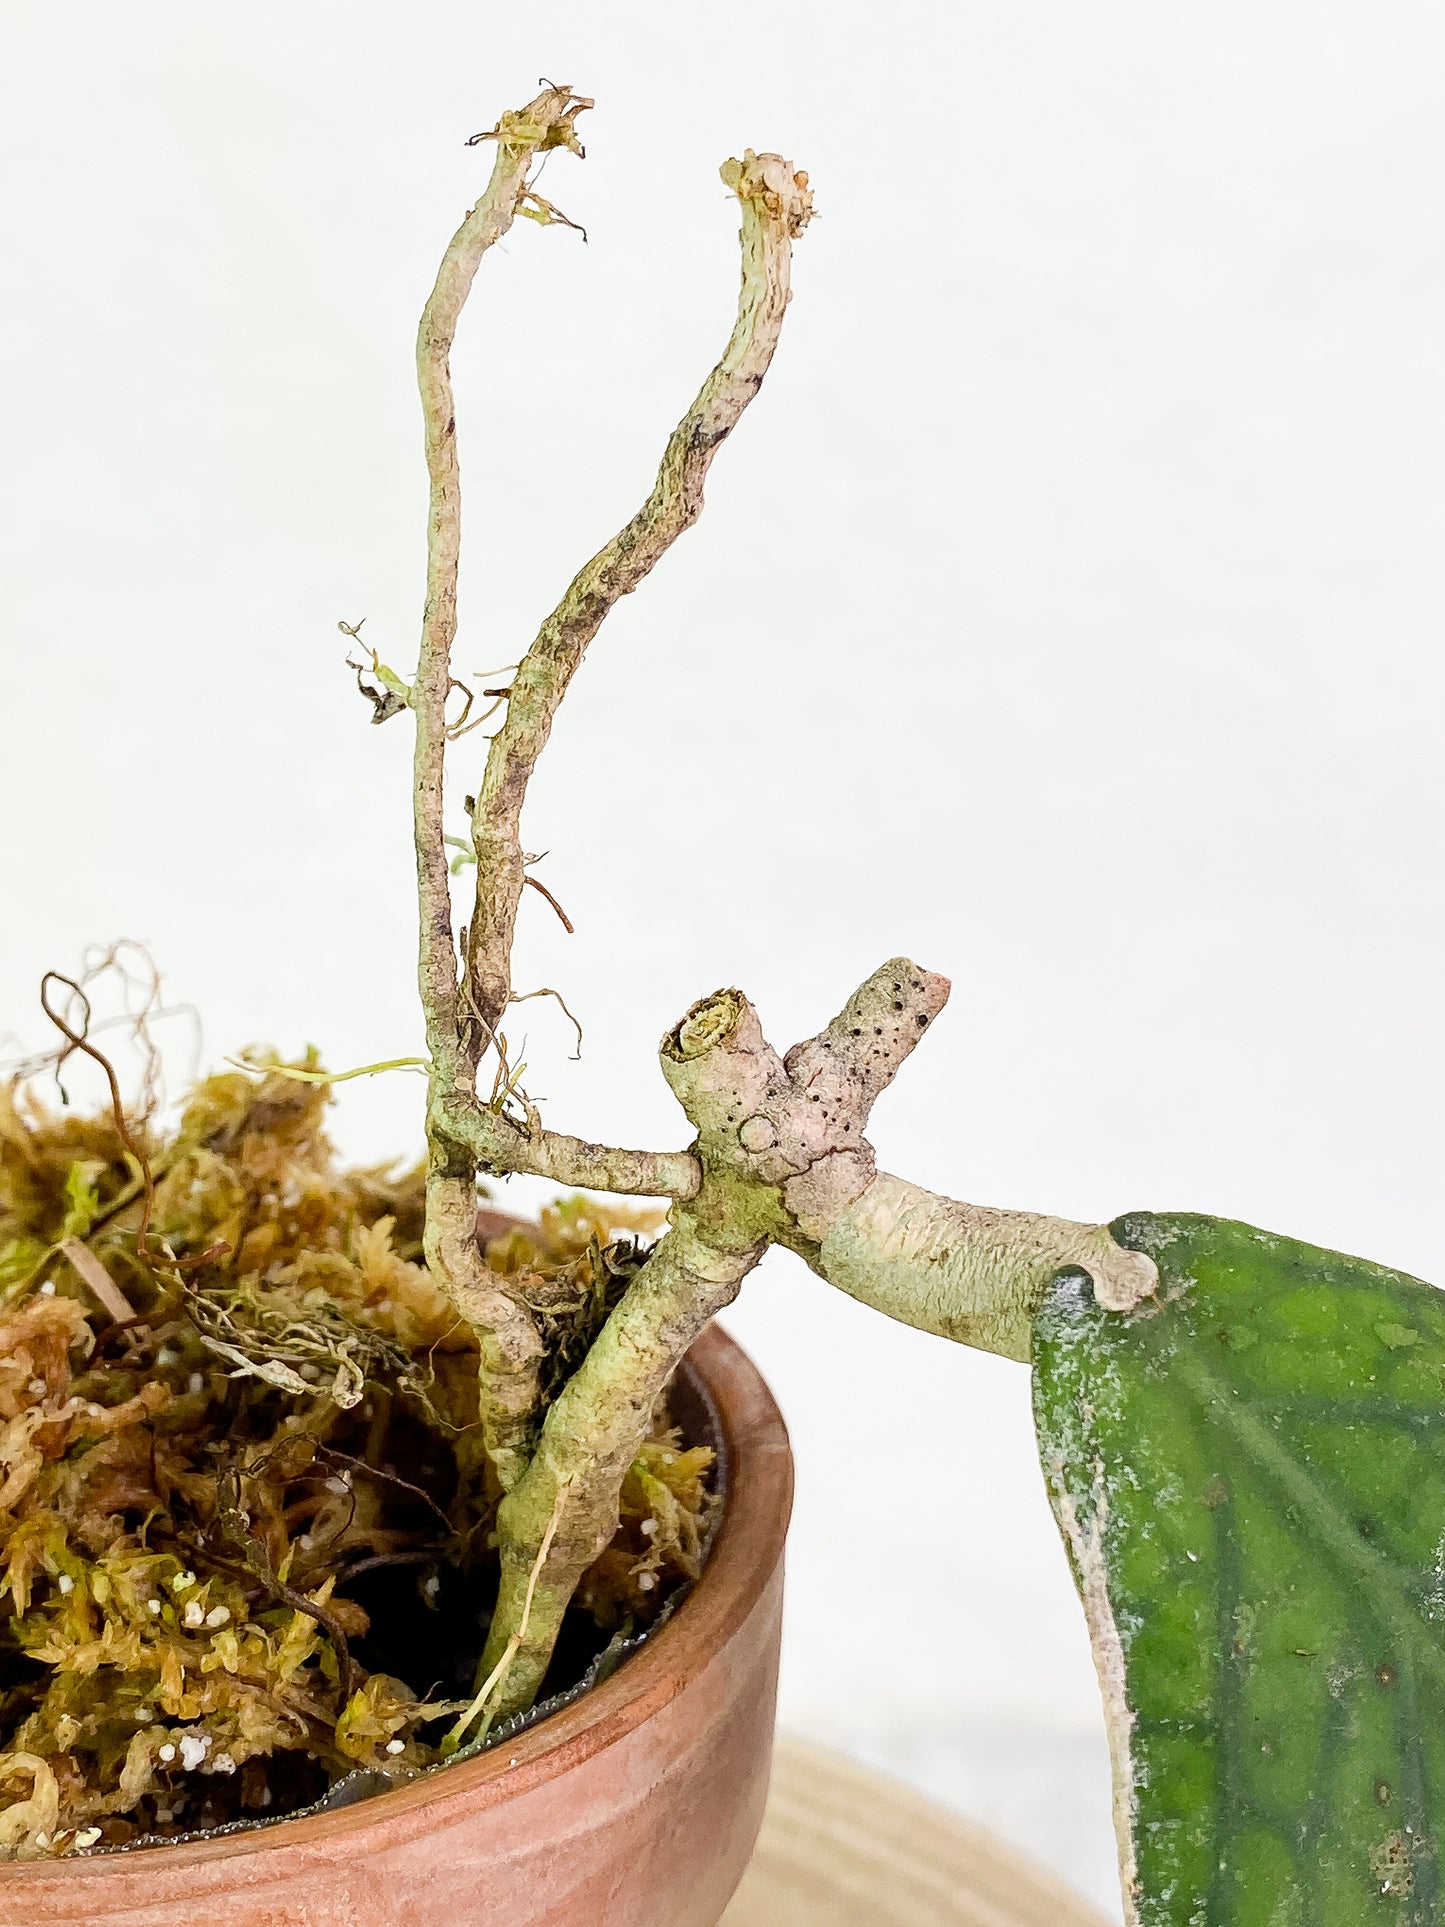 Hoya Tenggamus Slightly Rooted